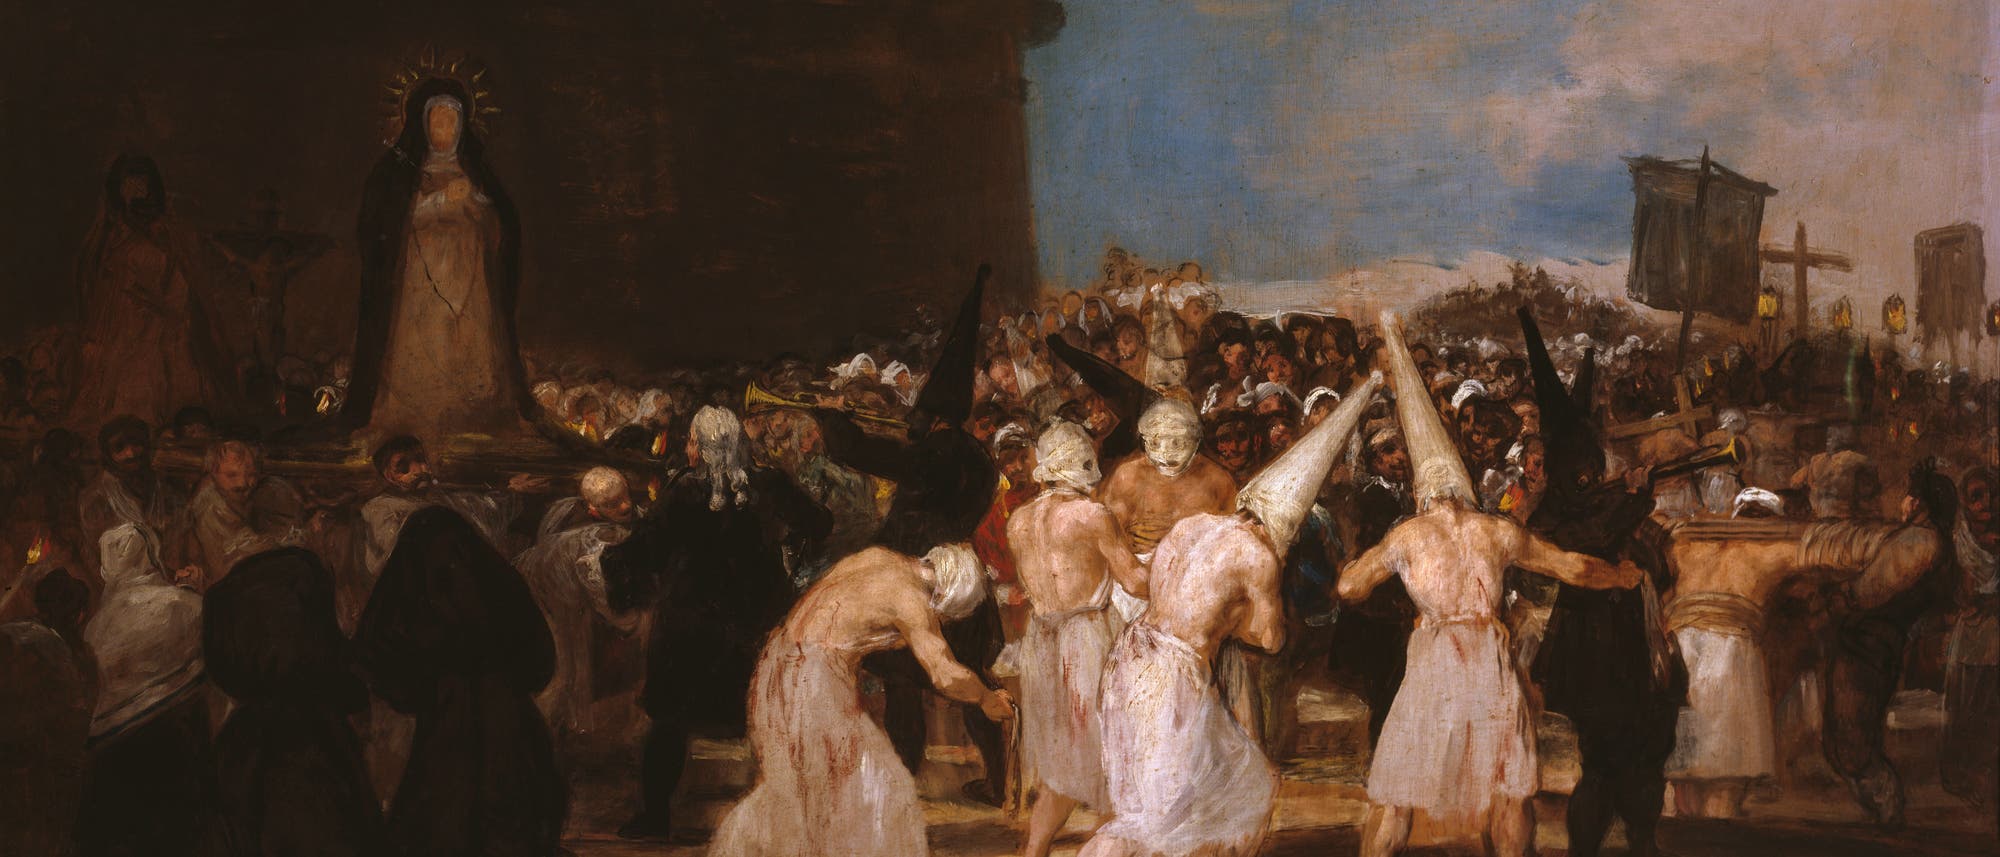 Ankunft der Geißler, Auschnitt aus einem Gemälde von Francisco de Goya, Anfang des 19. Jhds.